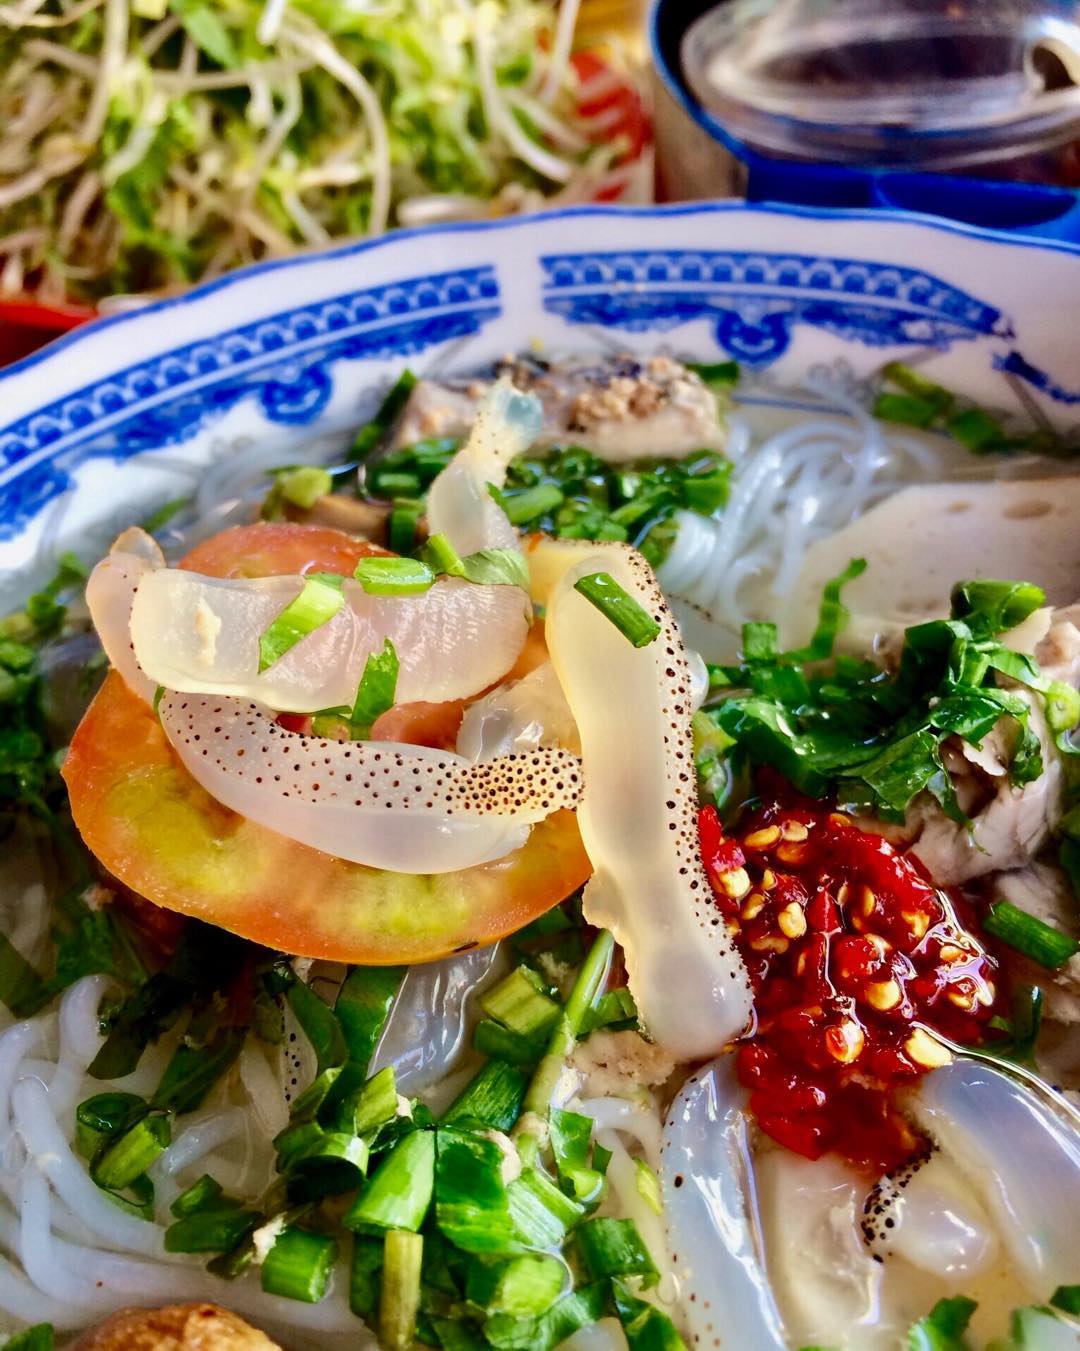 Bún sứa, món bún giòn sần sật, giải nhiệt hiệu quả được ưa thích ở Nha Trang - Ảnh 3